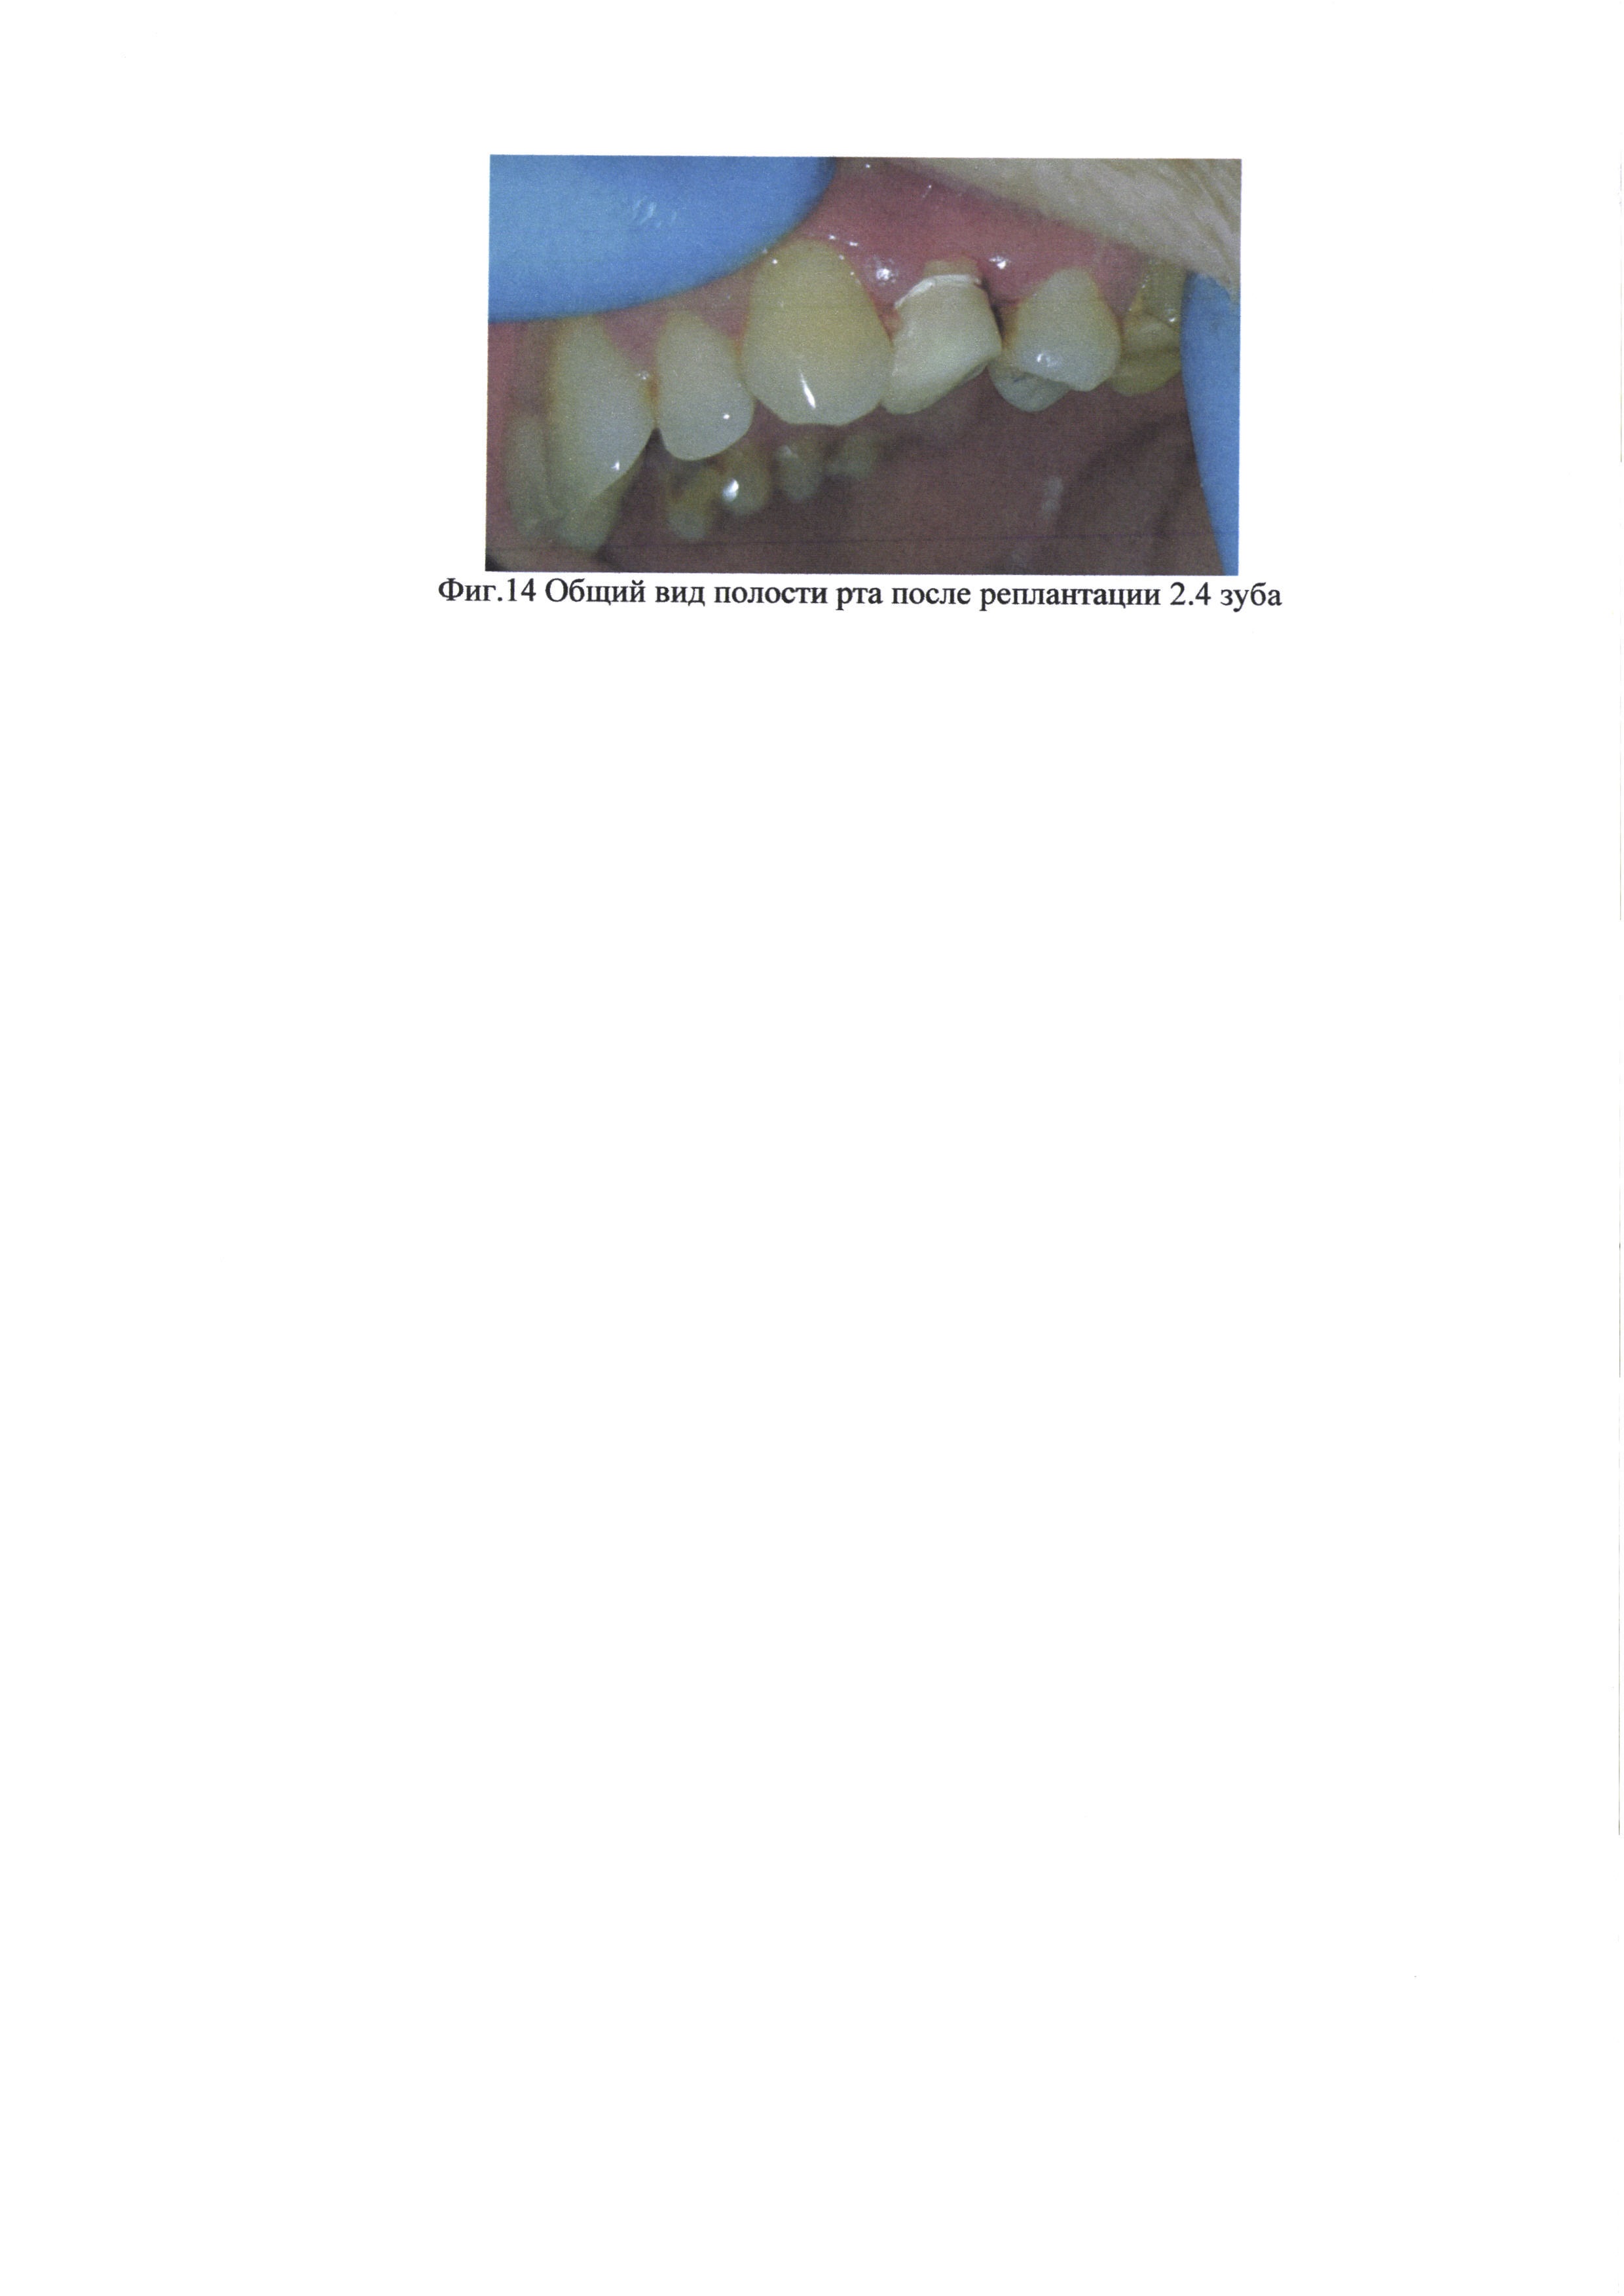 Способ внеротового одонтопрепарирования и изготовления провизорной коронки на реплантируемый зуб